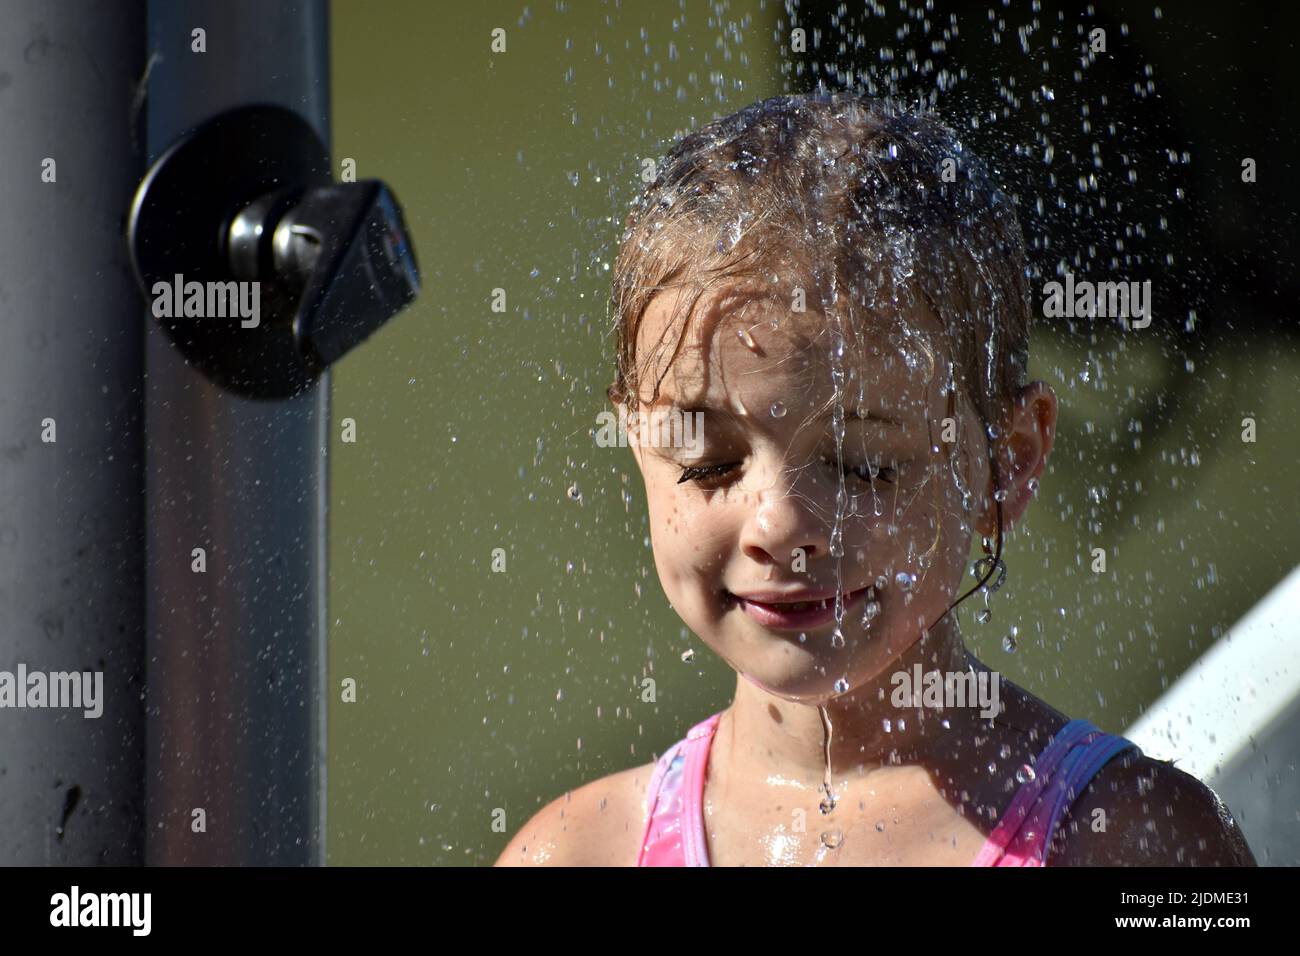 Das Kind kühlt sich während des heißen Wetters im Sommer unter einer Außendusche ab Stockfoto